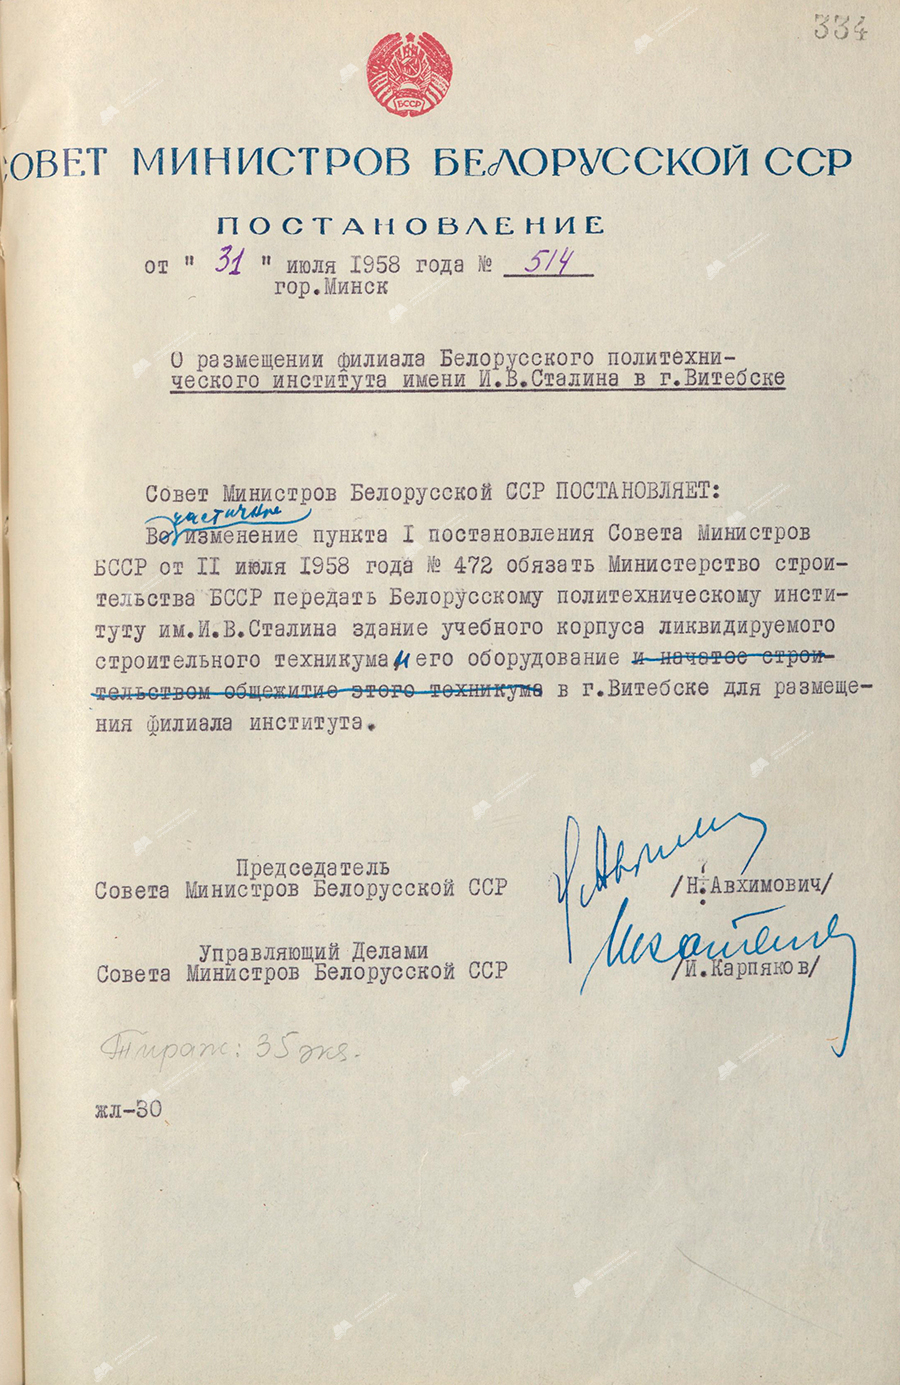 Beschluss Nr. 514 des Ministerrates der BSSR «Über die Unterbringung einer Filiale des IW Stalin Polytechnischen Instituts für Belarus in Witebsk»-с. 0